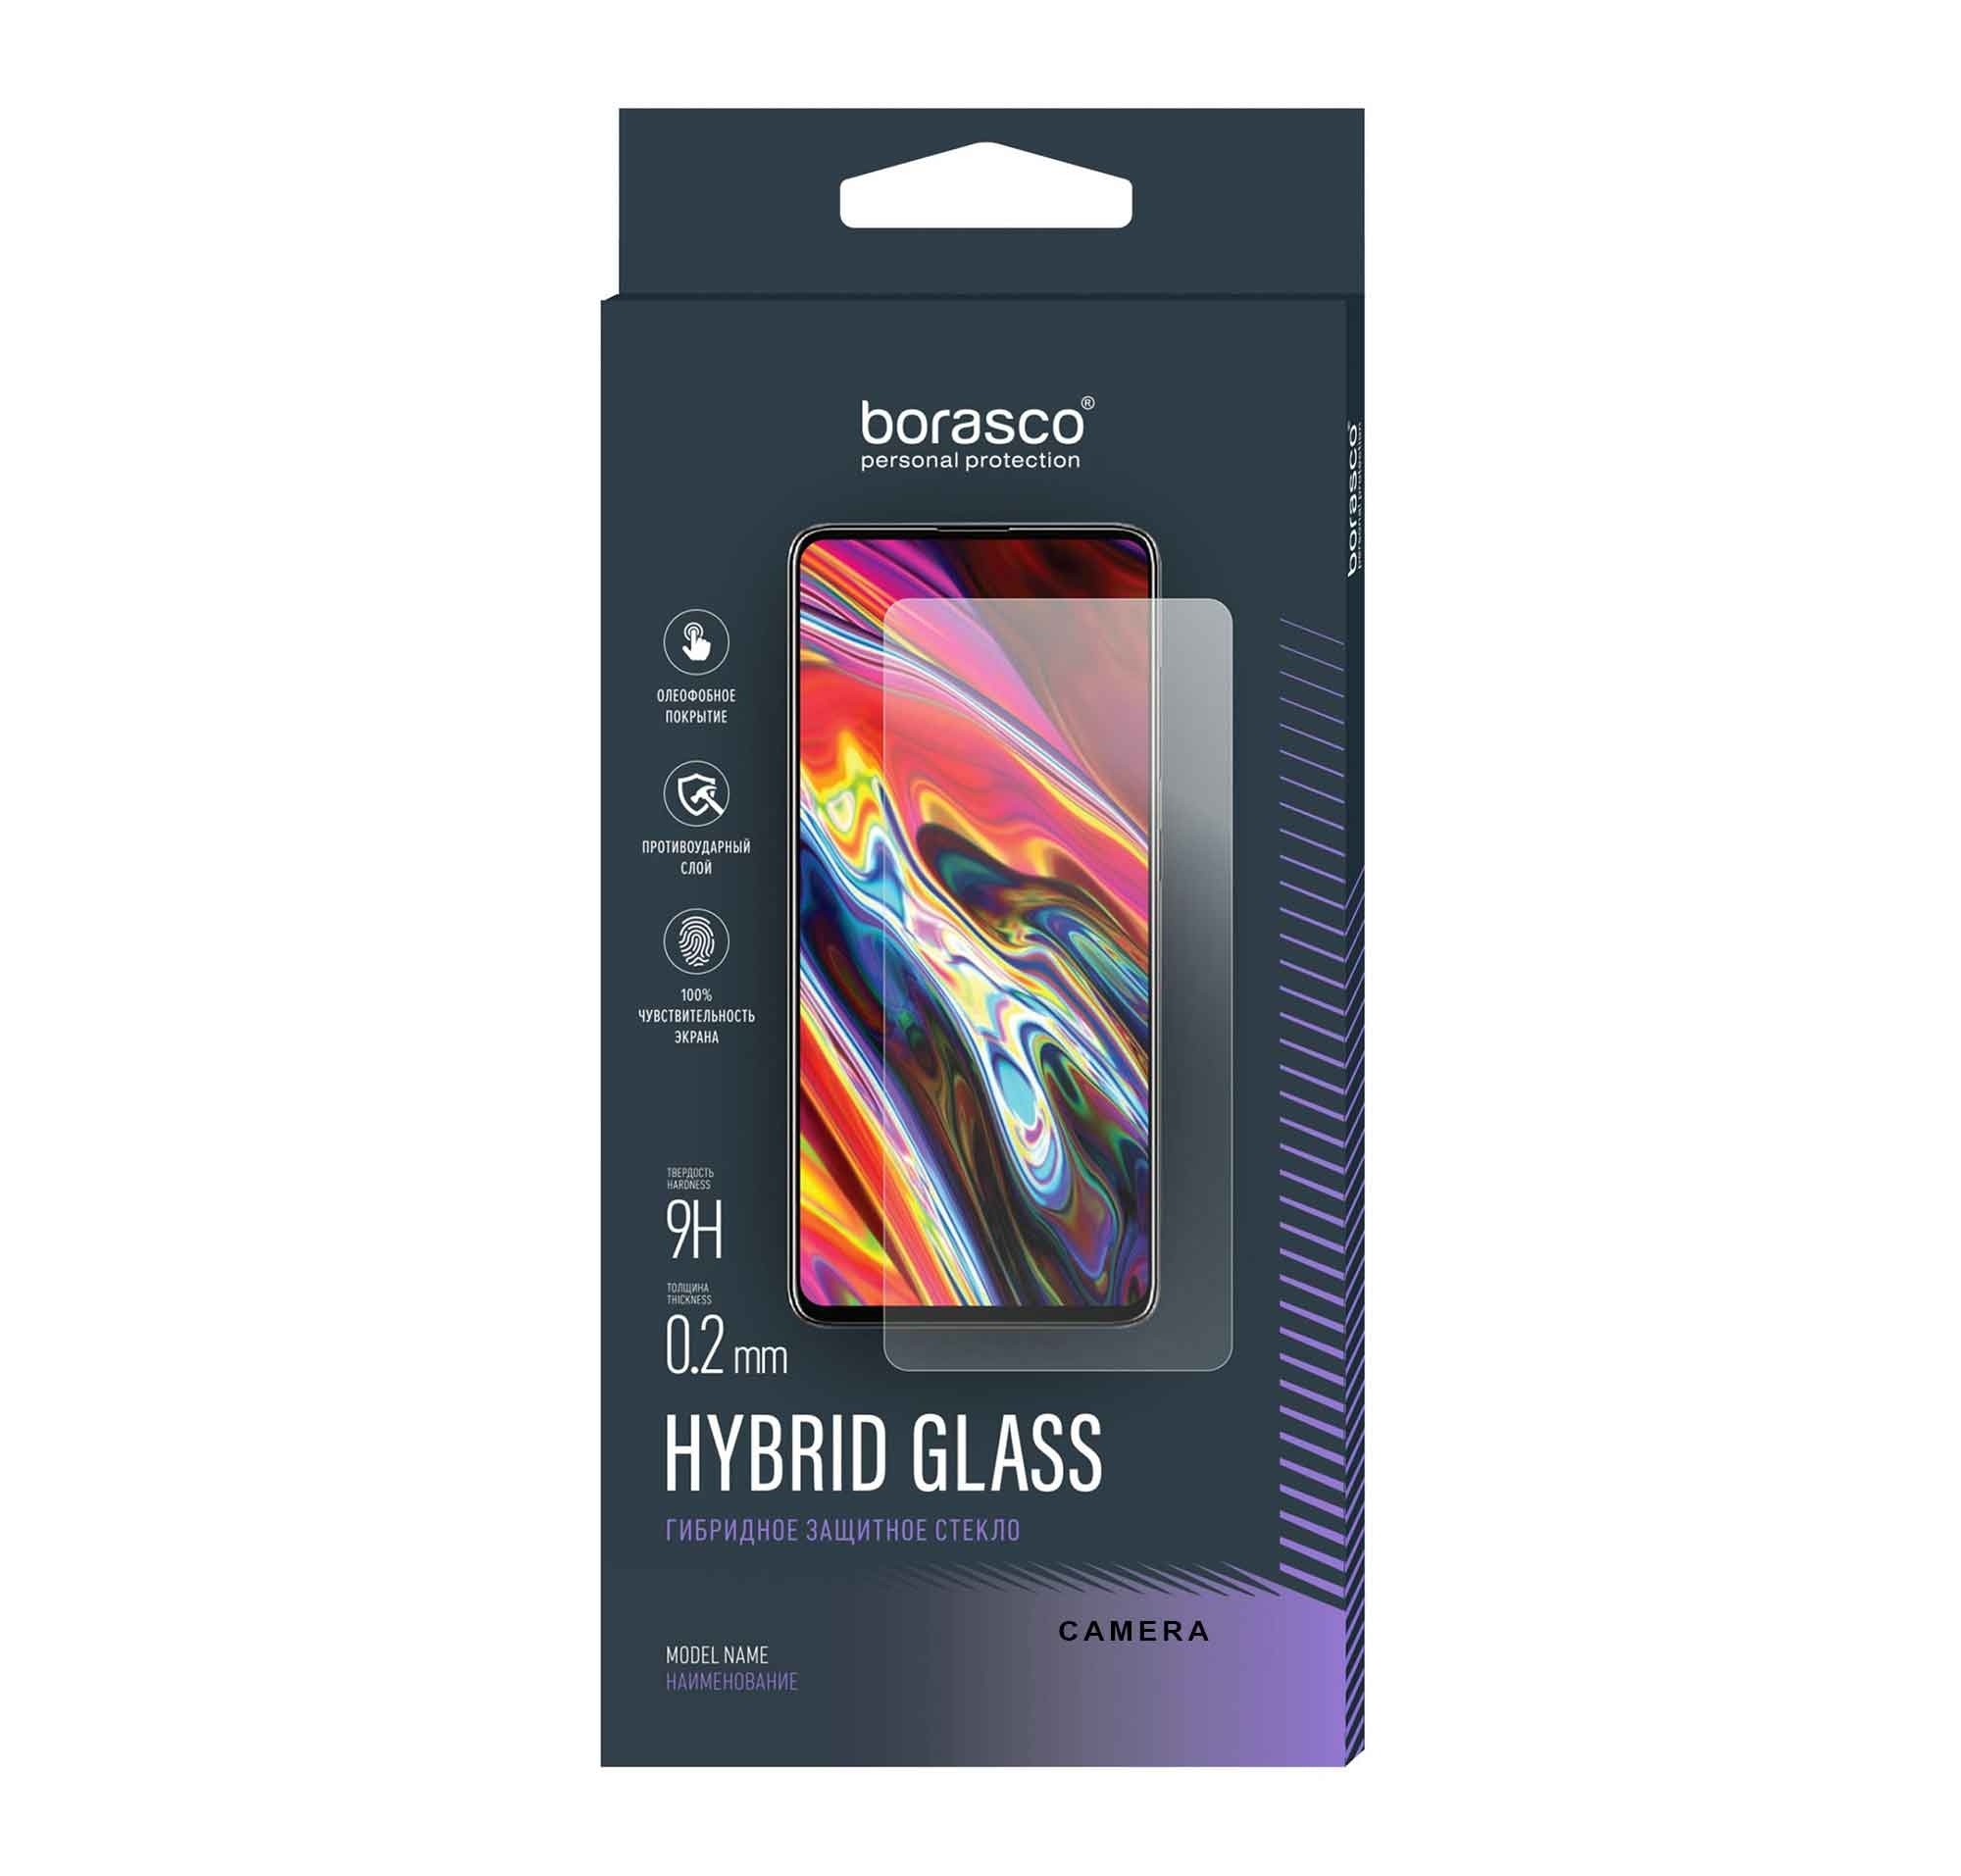 мягкий силиконовый чехол для oukitel iiif150 r2022 f150 r2022 восьмиугольный warrior f150 bison 2021 стеклянный чехол на iiif150 r2022 чехол s стекло Стекло защитное BoraSCO (Экран+Камера) Hybrid Glass для Oukitel F150 R2022